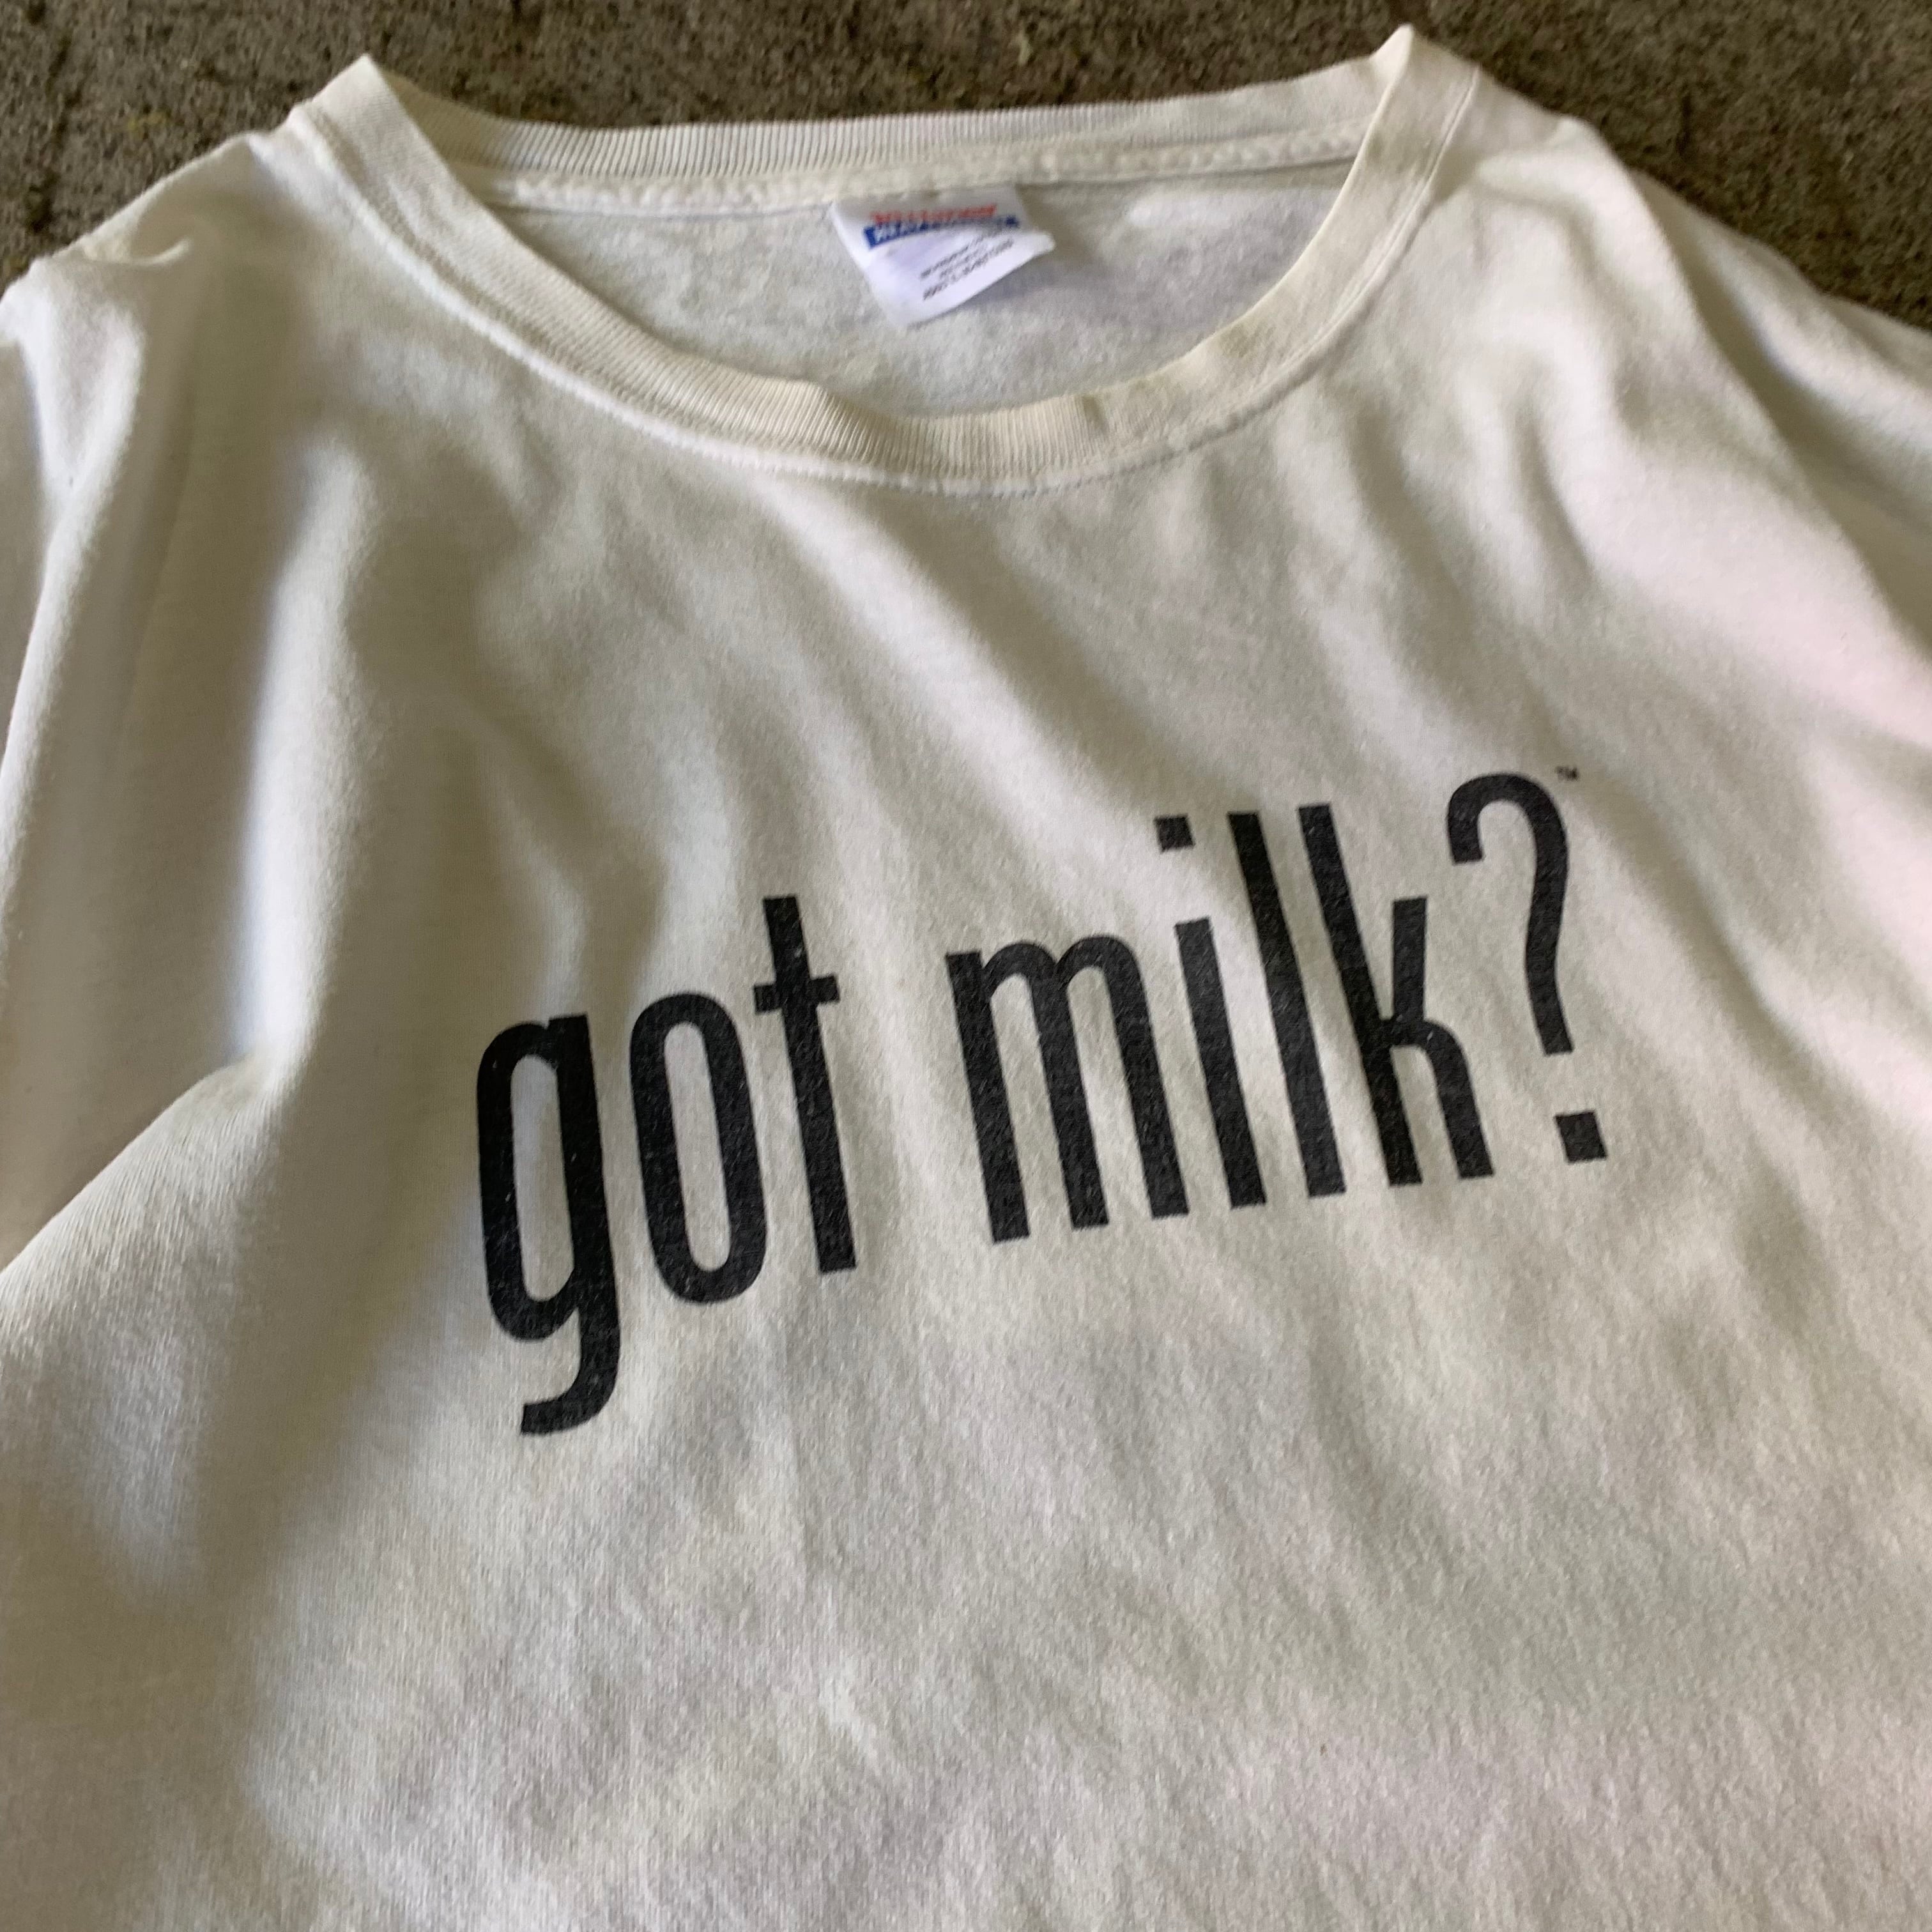 00s got milk? T-shirt | What'z up